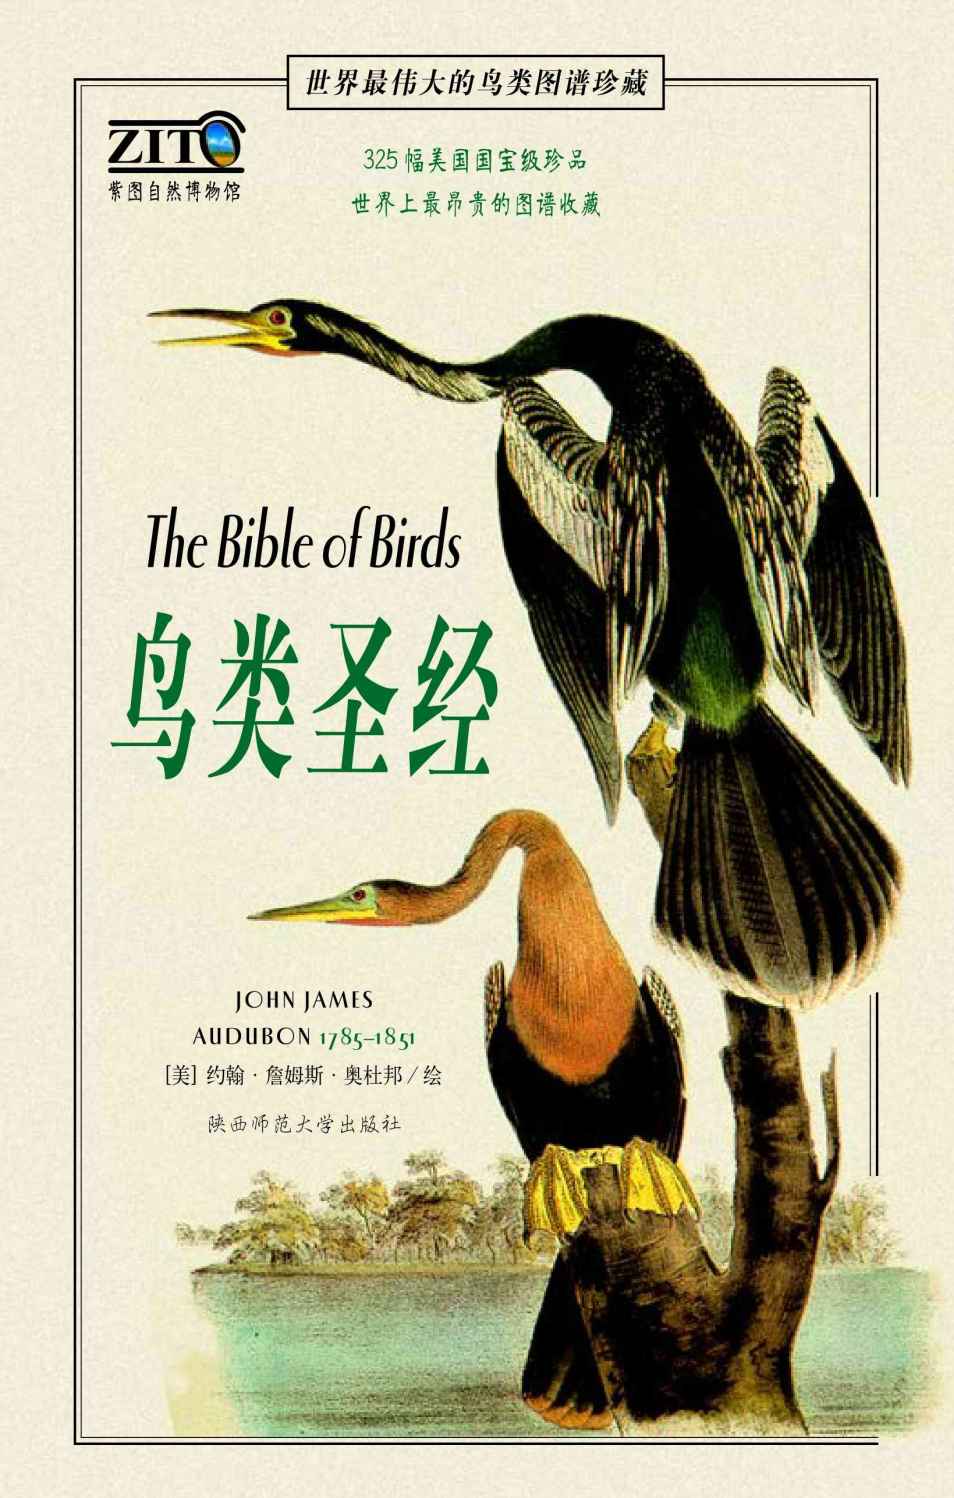 鸟类圣经:世界最伟大的鸟类图谱